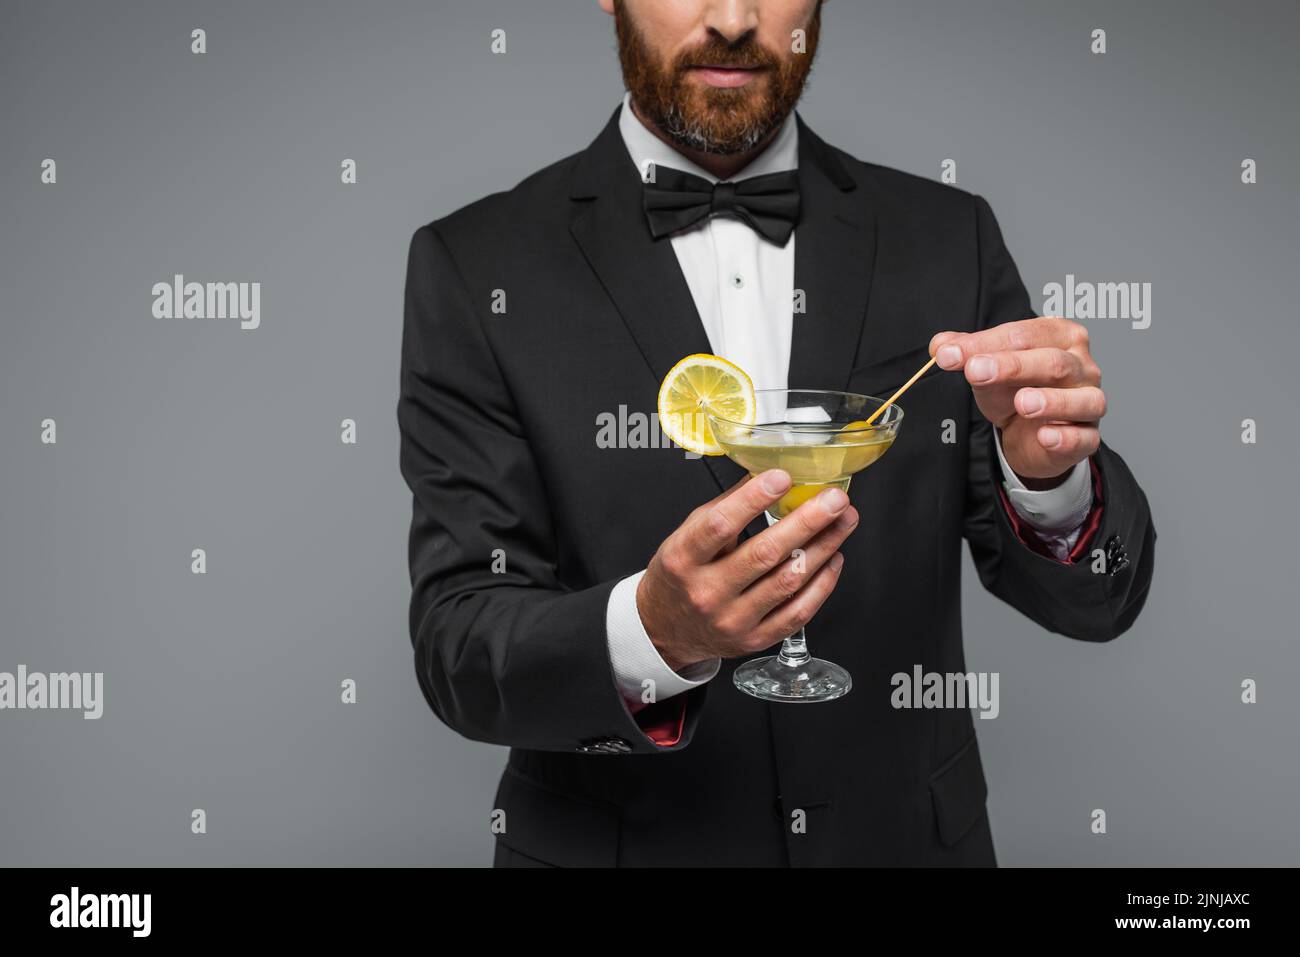 vista parcial de hombre barbudo en traje con pajarita sujetando palillo de dientes con oliva en vidrio con martini aislado en gris, imagen de stock Foto de stock